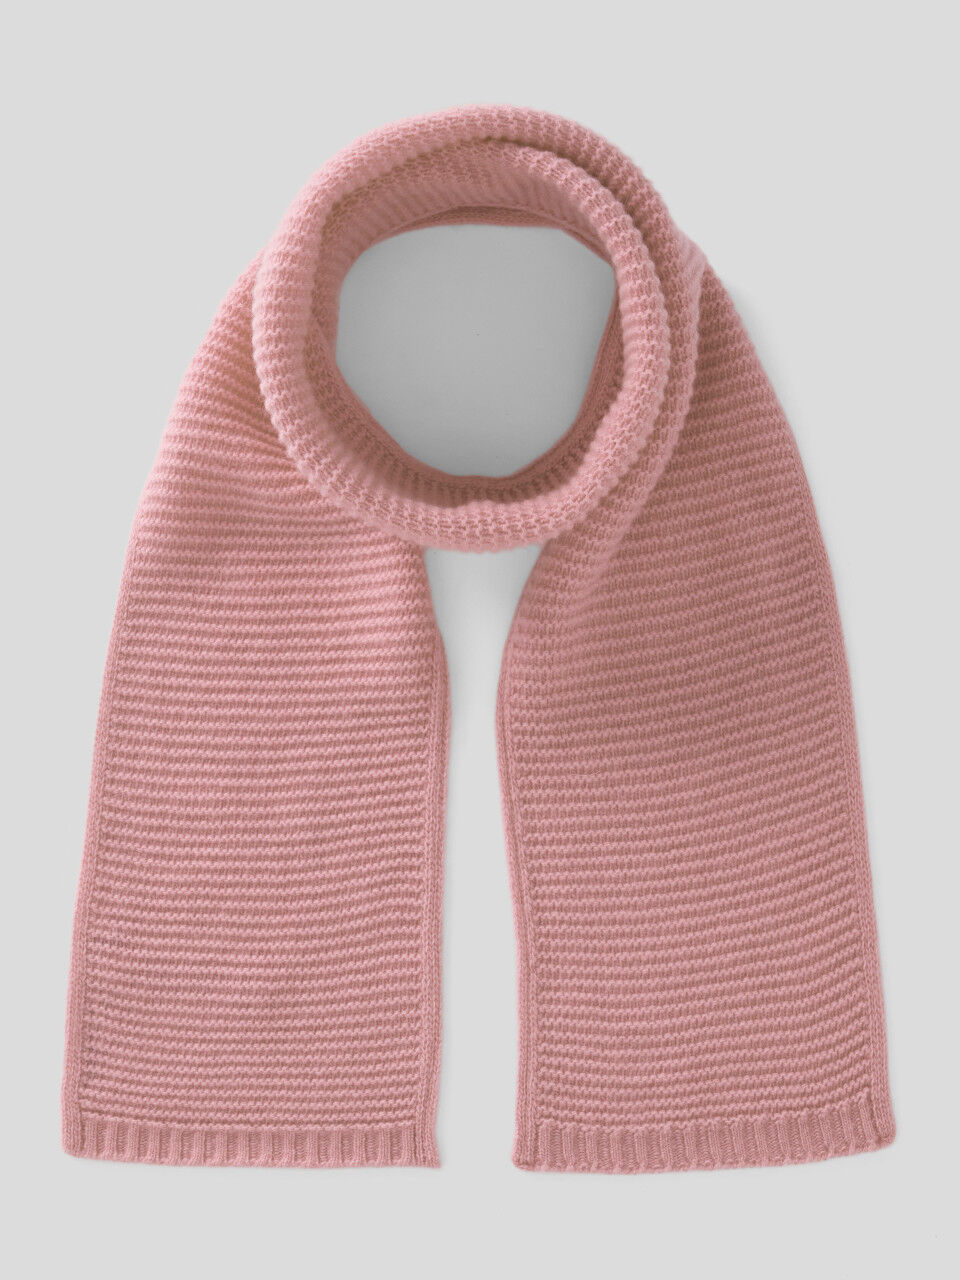 Verarbeiteter Schal aus einer stretchigen Wollmischung